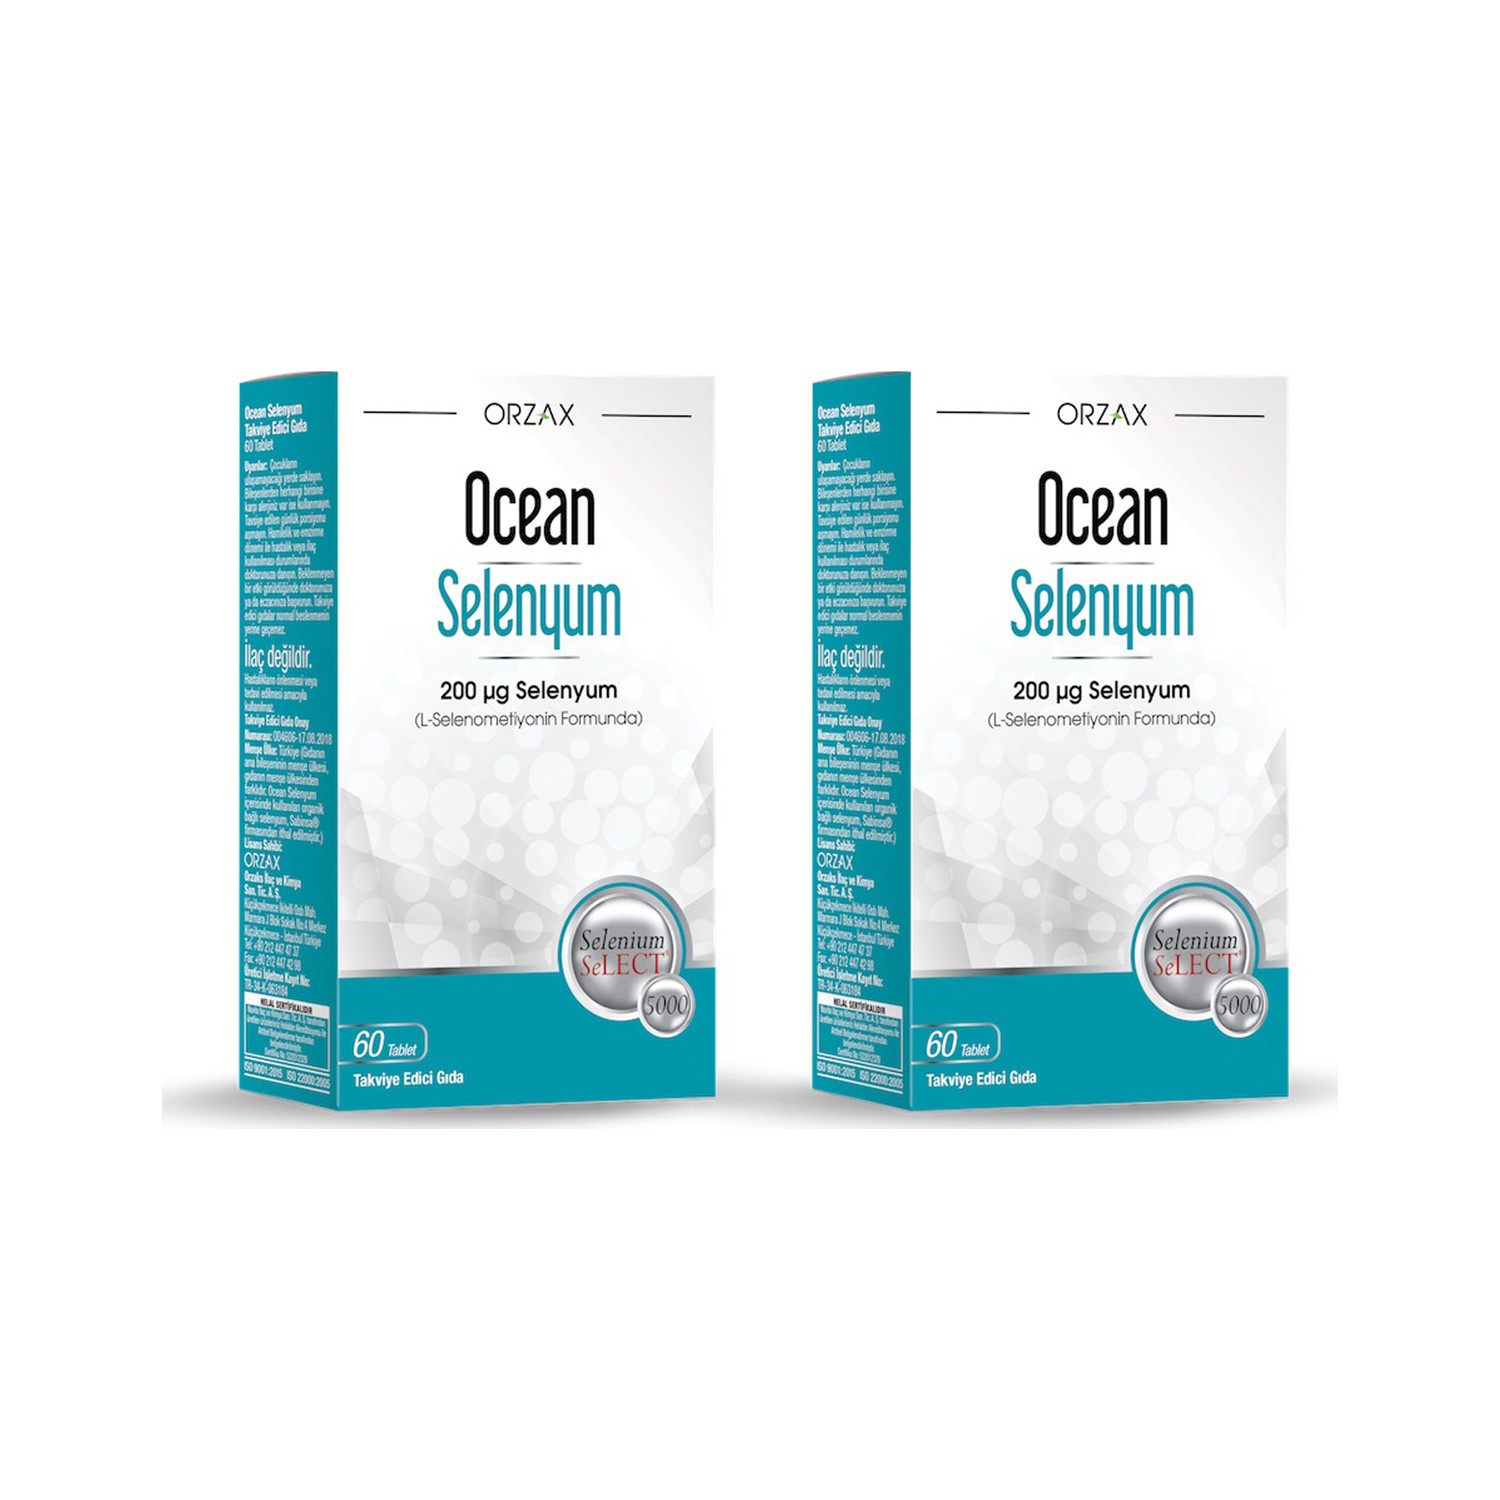 селен elemax selenium solo 150 мкг в таблетках 60 шт Селен Orzax Ocean 200 мкг, 2 упаковки по 60 таблеток